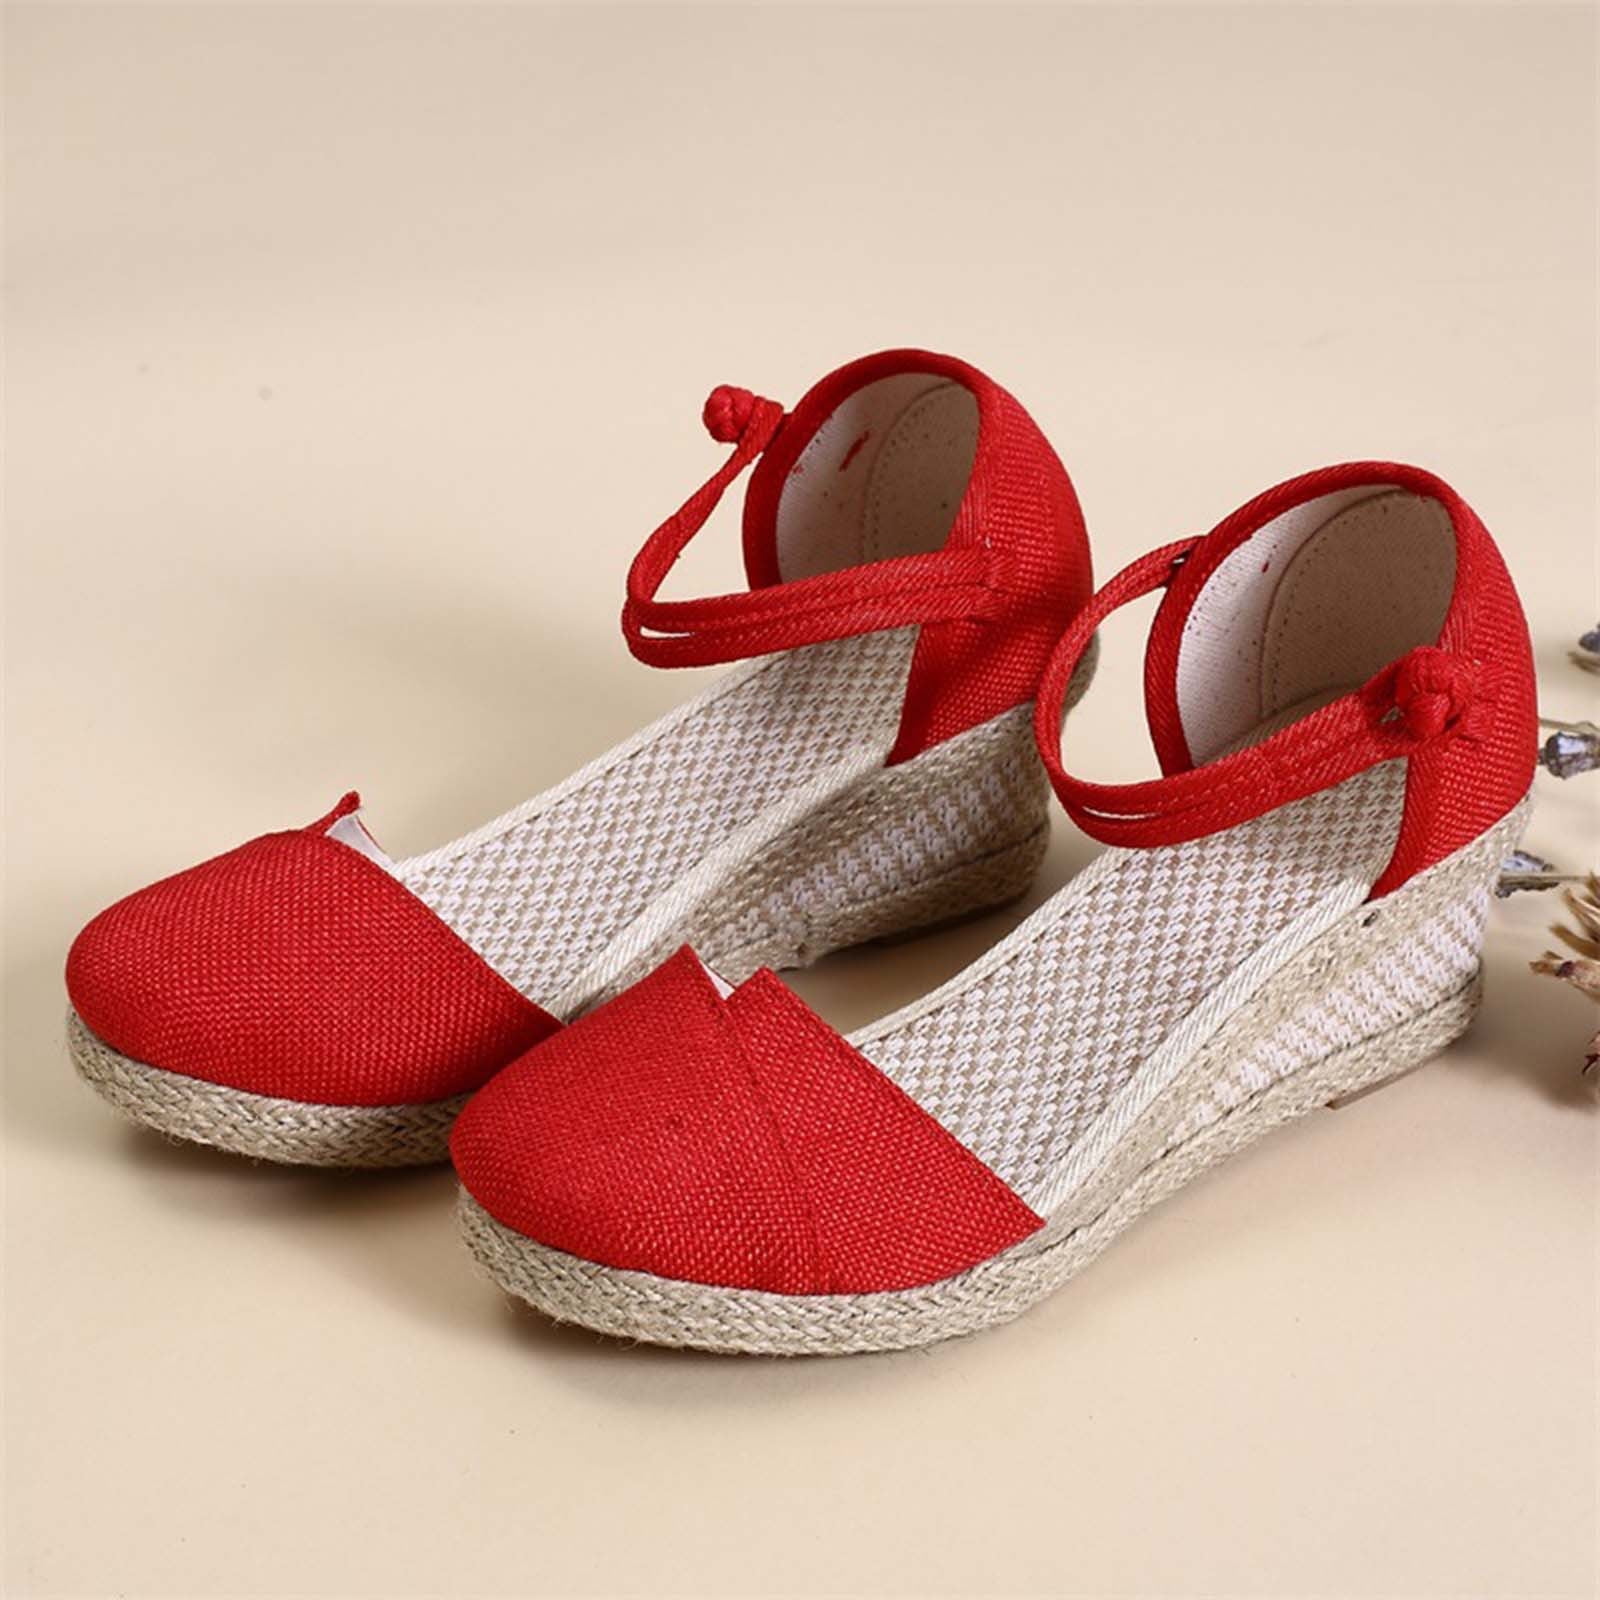 Vintage Boho Sandals Gnobogi Womens Closed Toe Wedges Shoes Platform ...